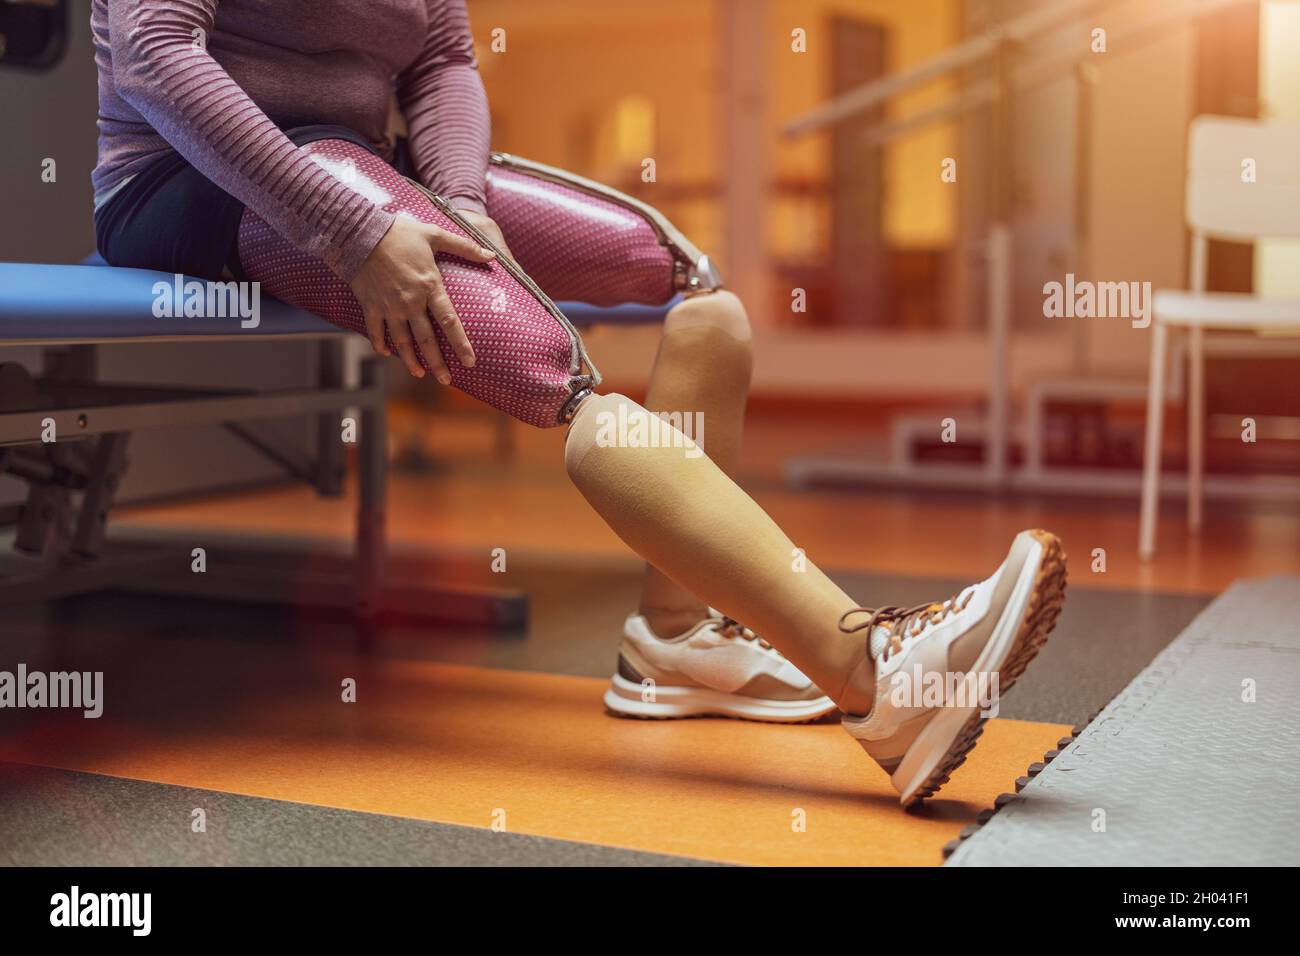 Junge Frau mit prothetischen Beinen, die im Physiotherapie-Zentrum trainiert Stockfoto